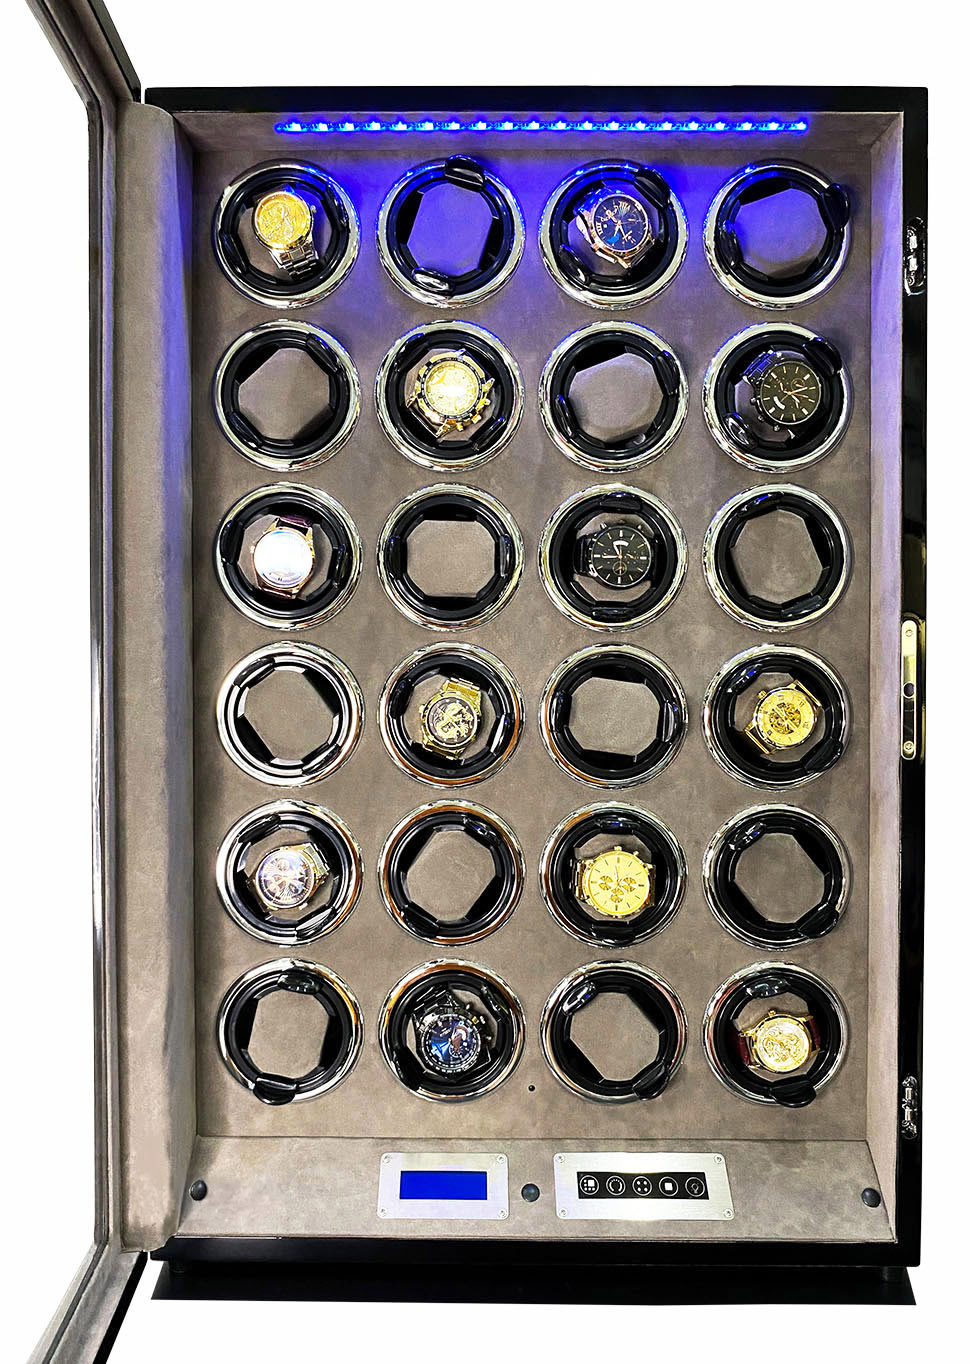 Tủ đồng hồ cơ 24 ngăn xoay acbow ổ khoá vân tay + remote + màn hình cảm ứng + đèn led nội thất